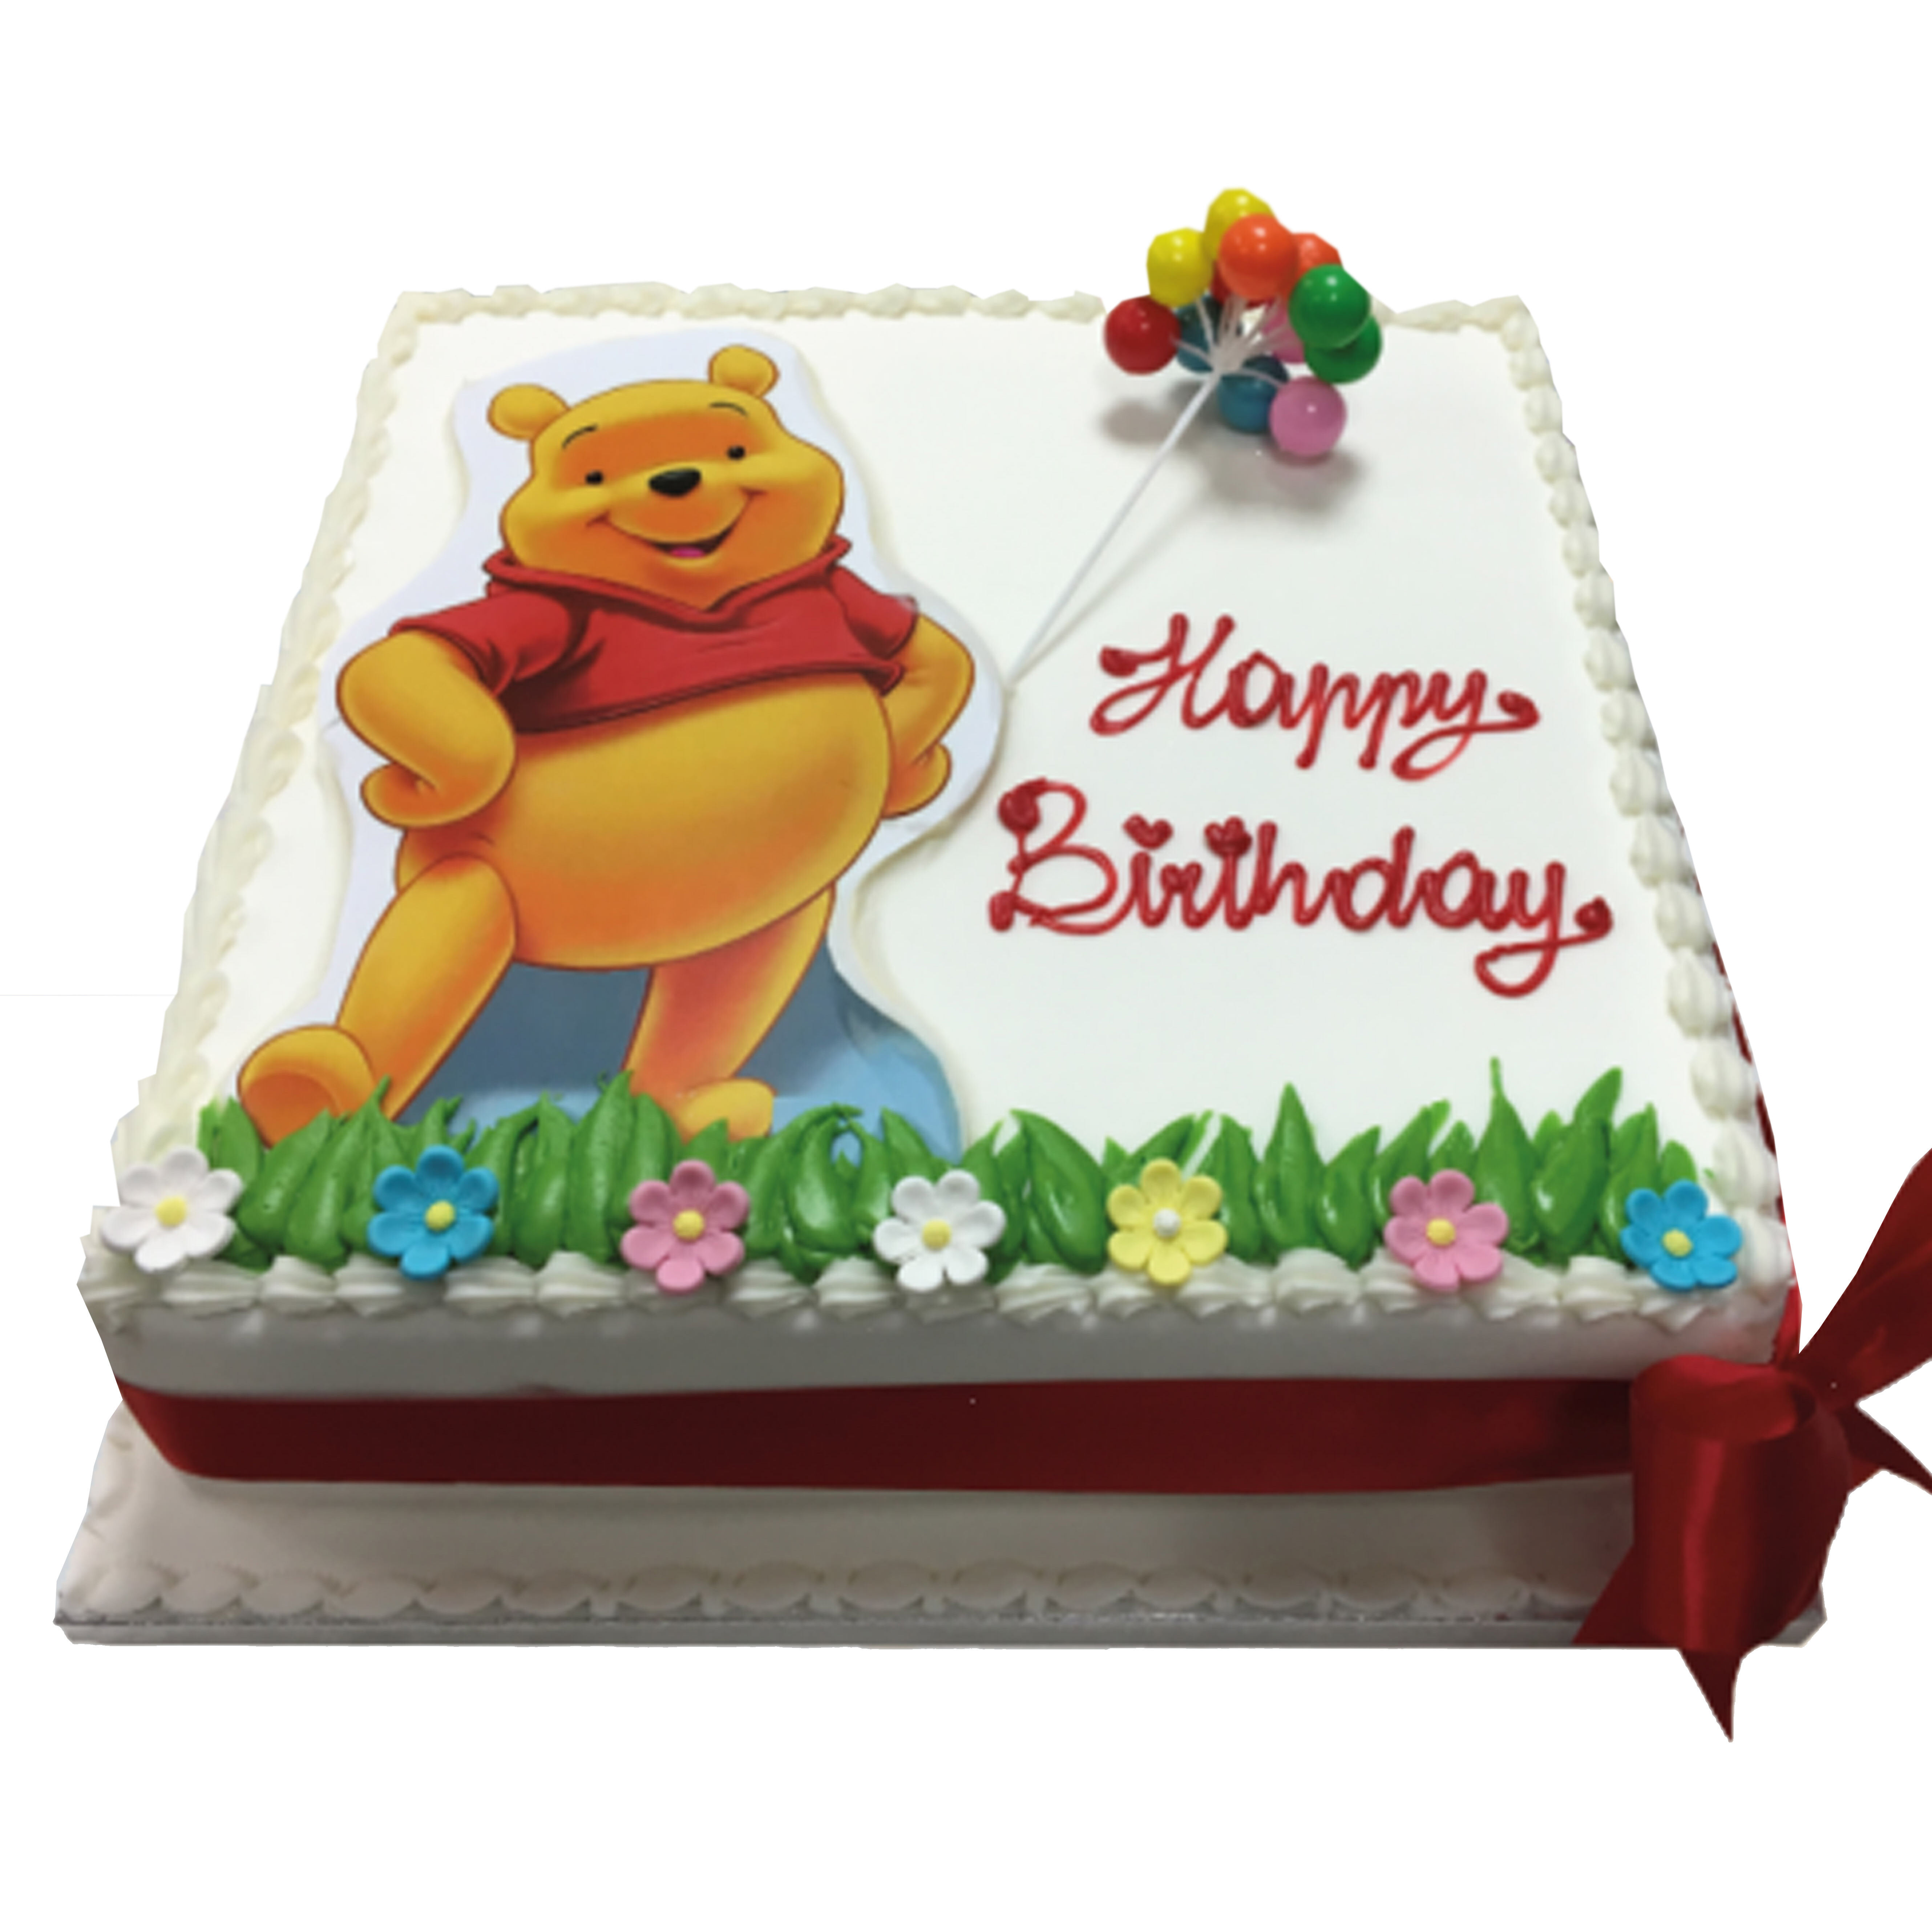 Winnie & Friends Picnic Cake - Cakey Goodness